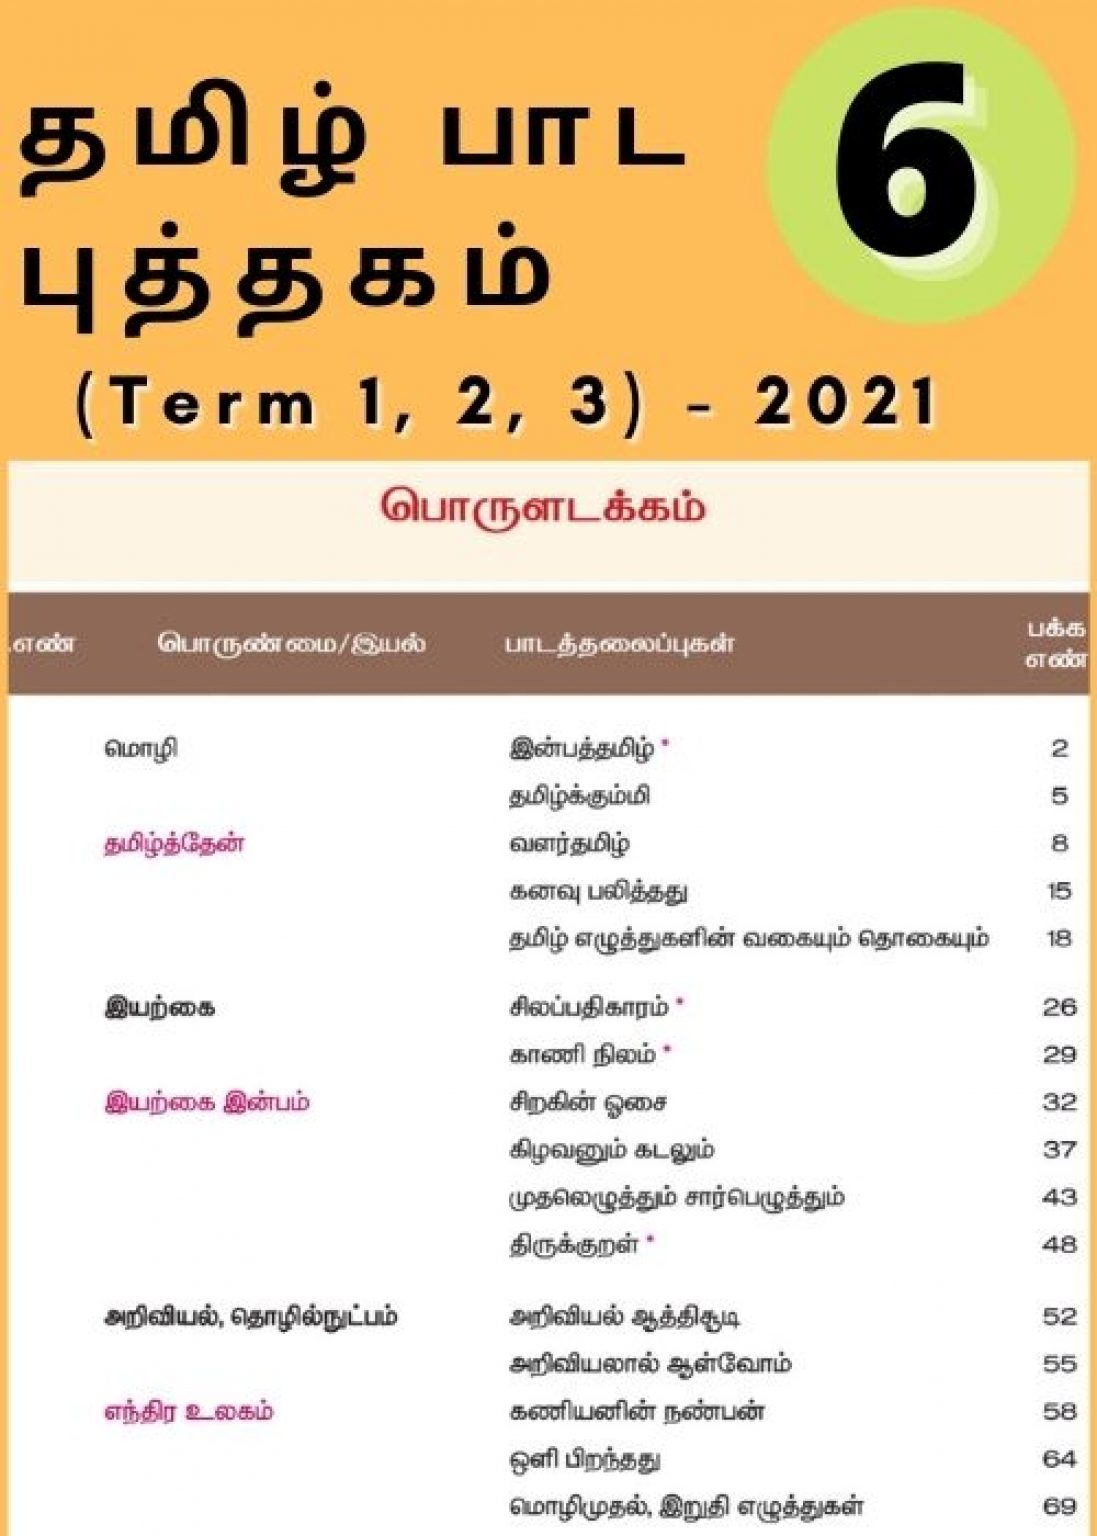 6th standard new tamil book pdf download